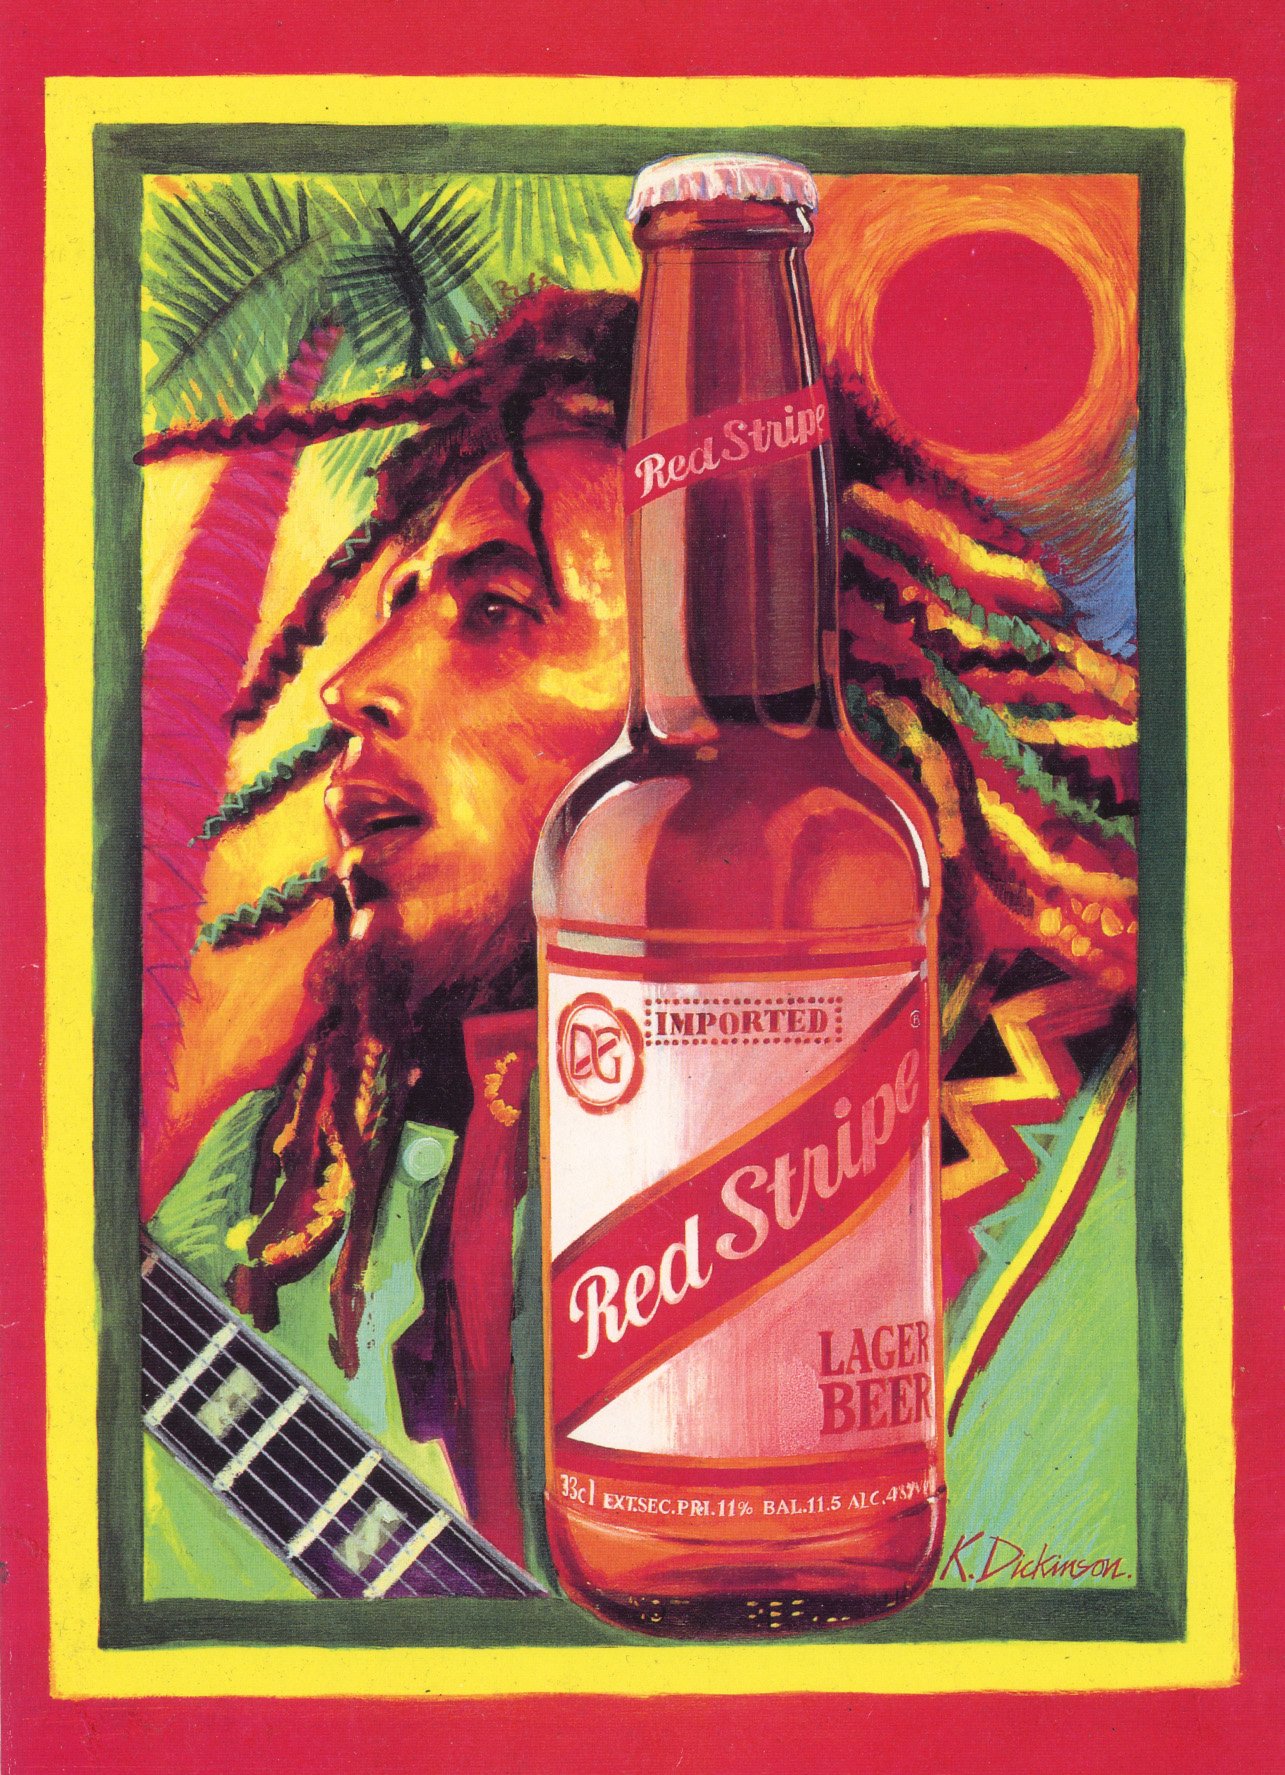 Red Stipe Marley.jpg